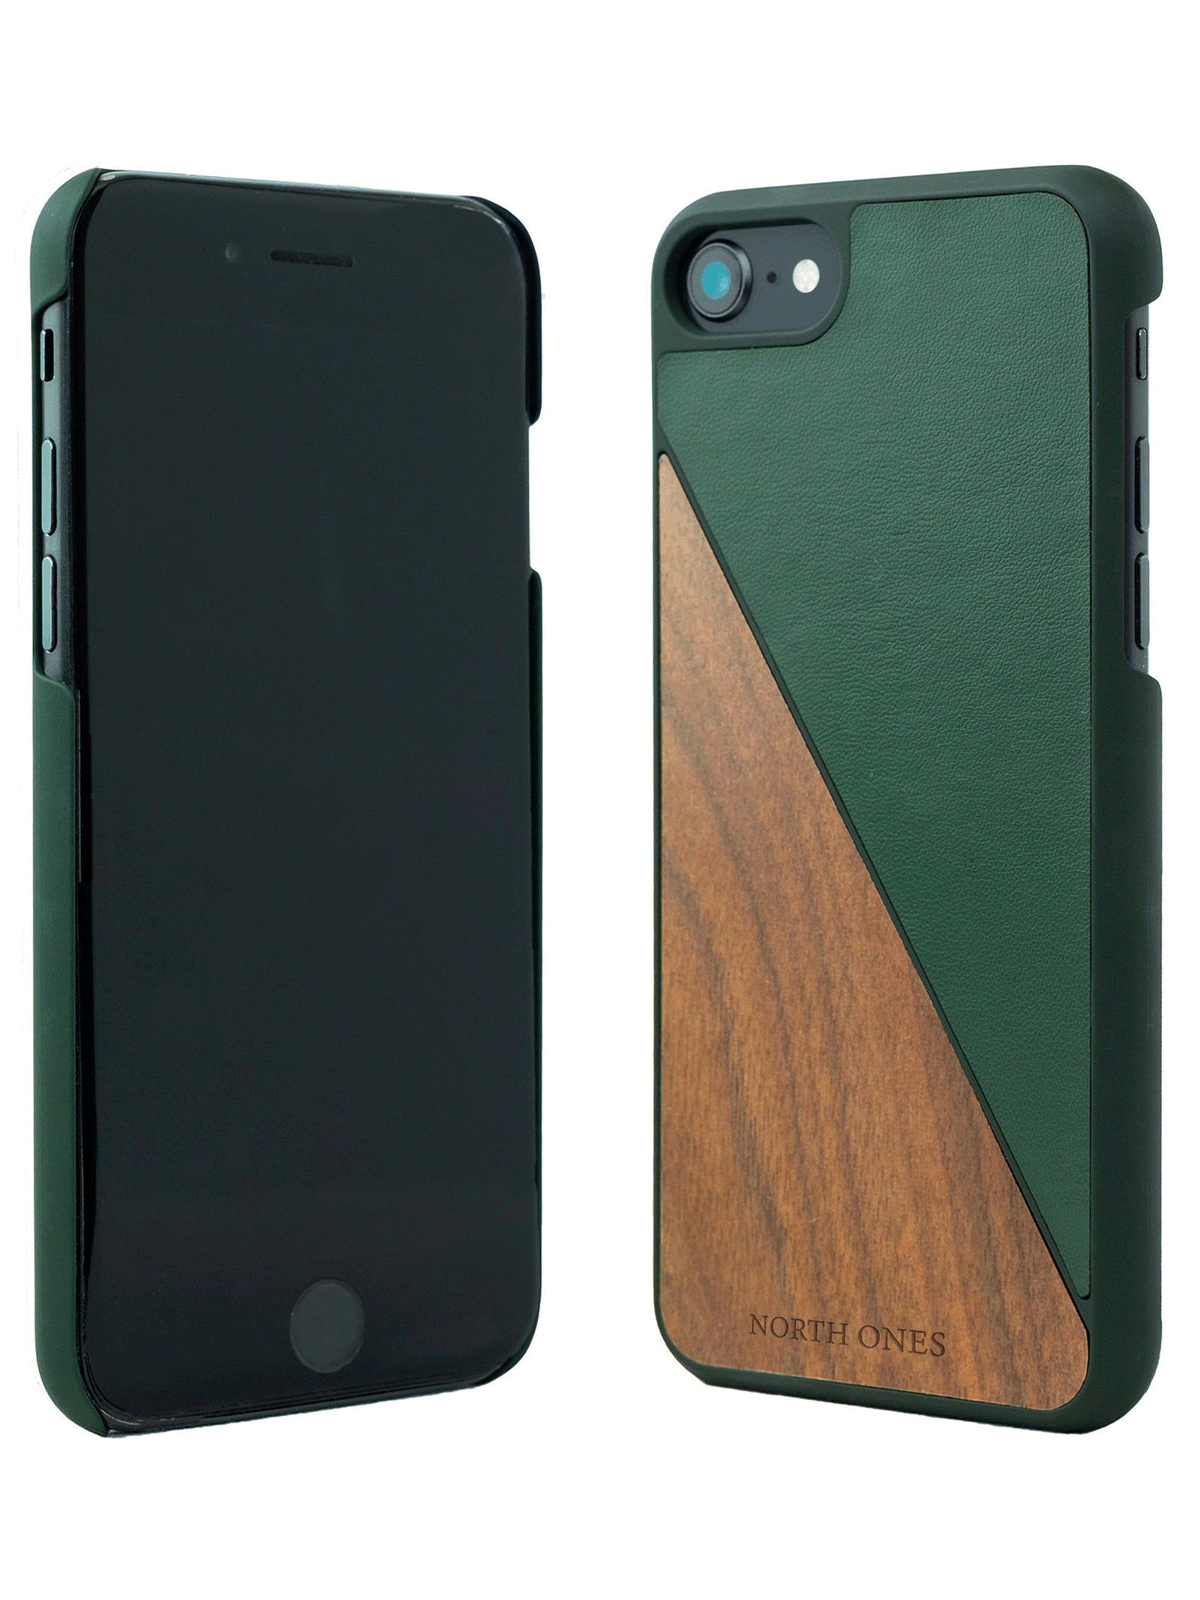 Mobilskal trä forest walnut iphone 7/8 framsida och baksida